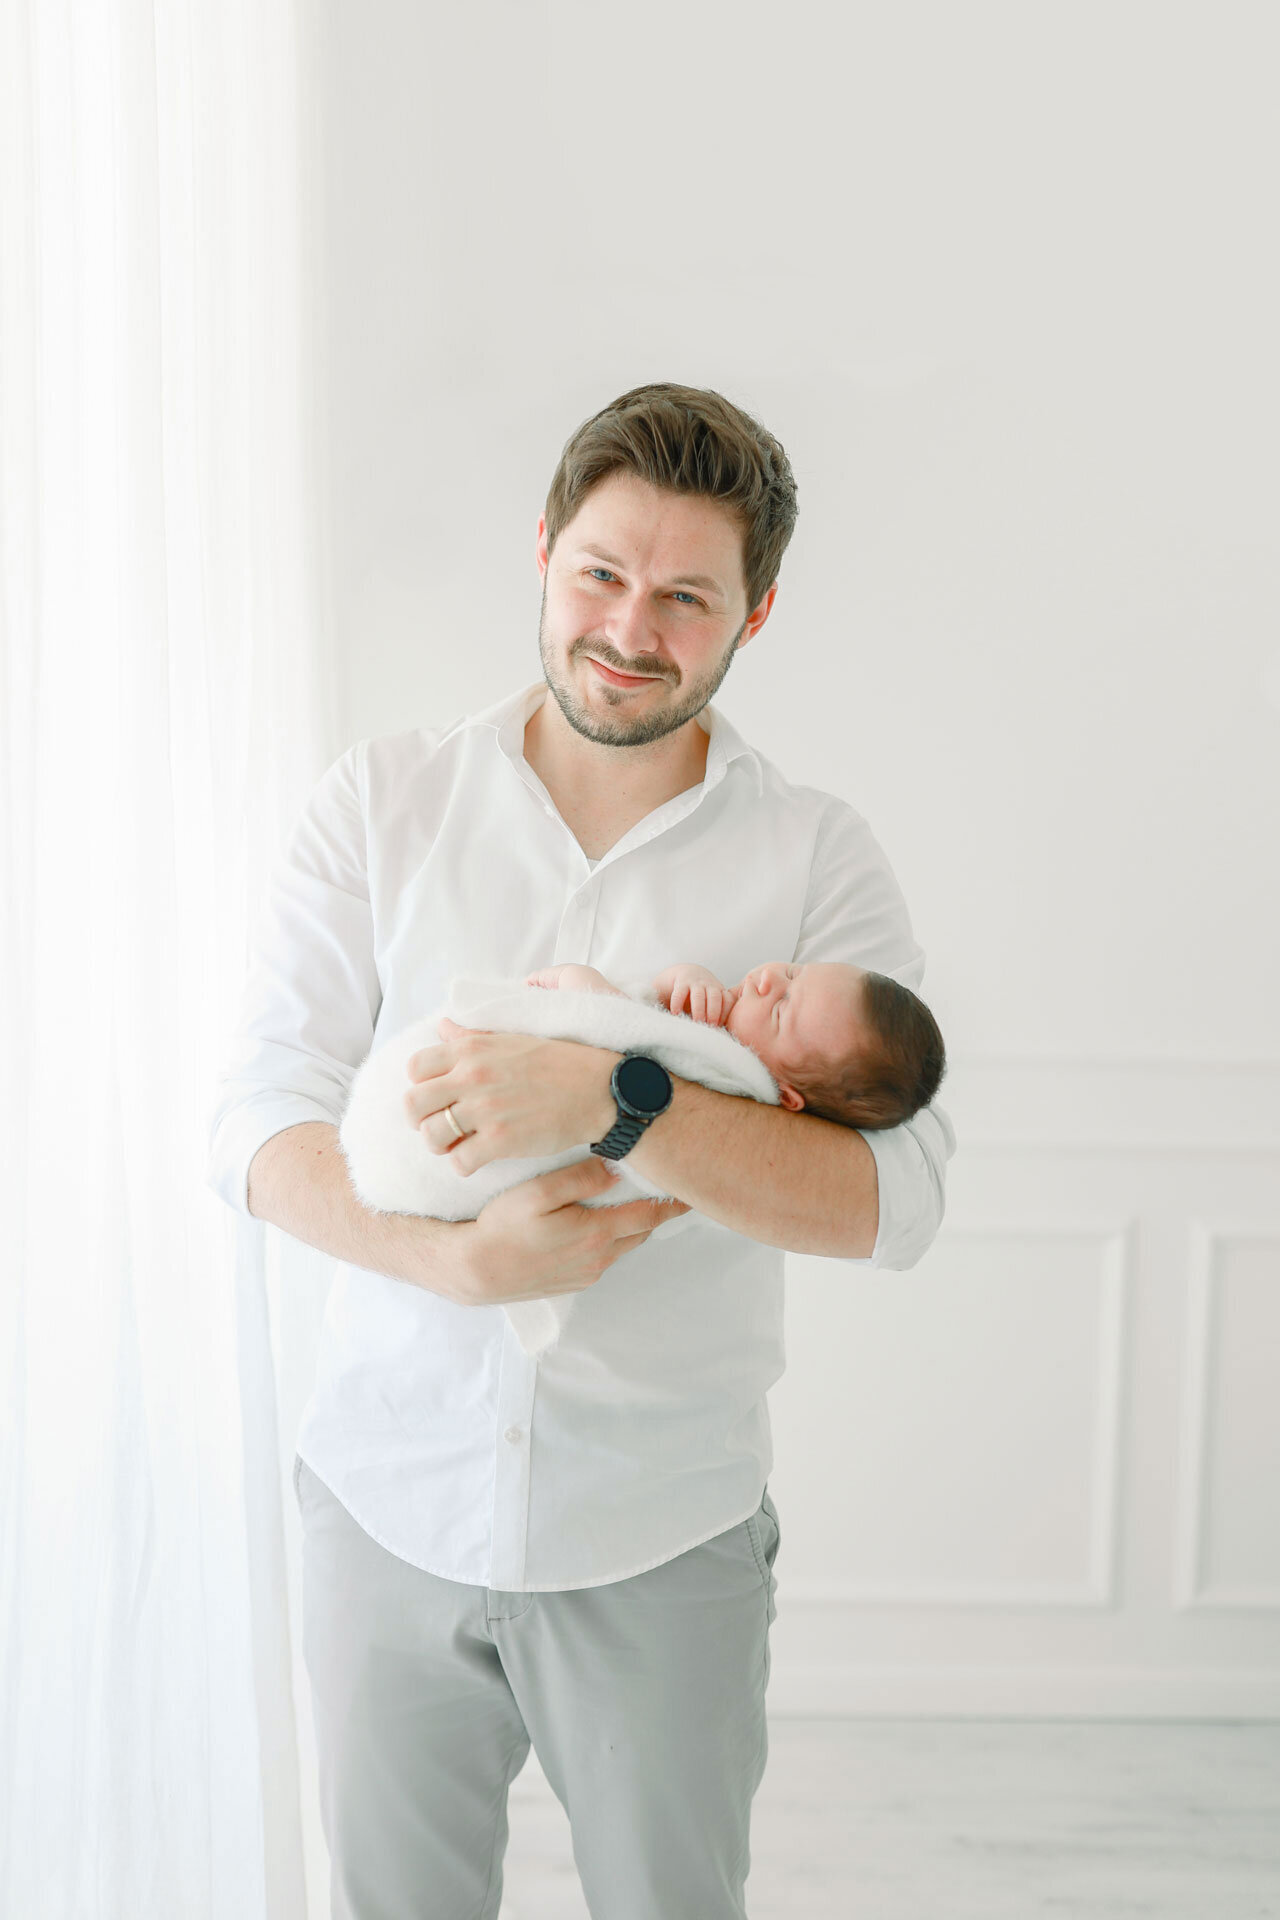 Neugeborenenshooting in Bielefeld mit Papa in einem weißen Hemd, der stolz und glücklich seinen Neugeborenen im Arm hält.